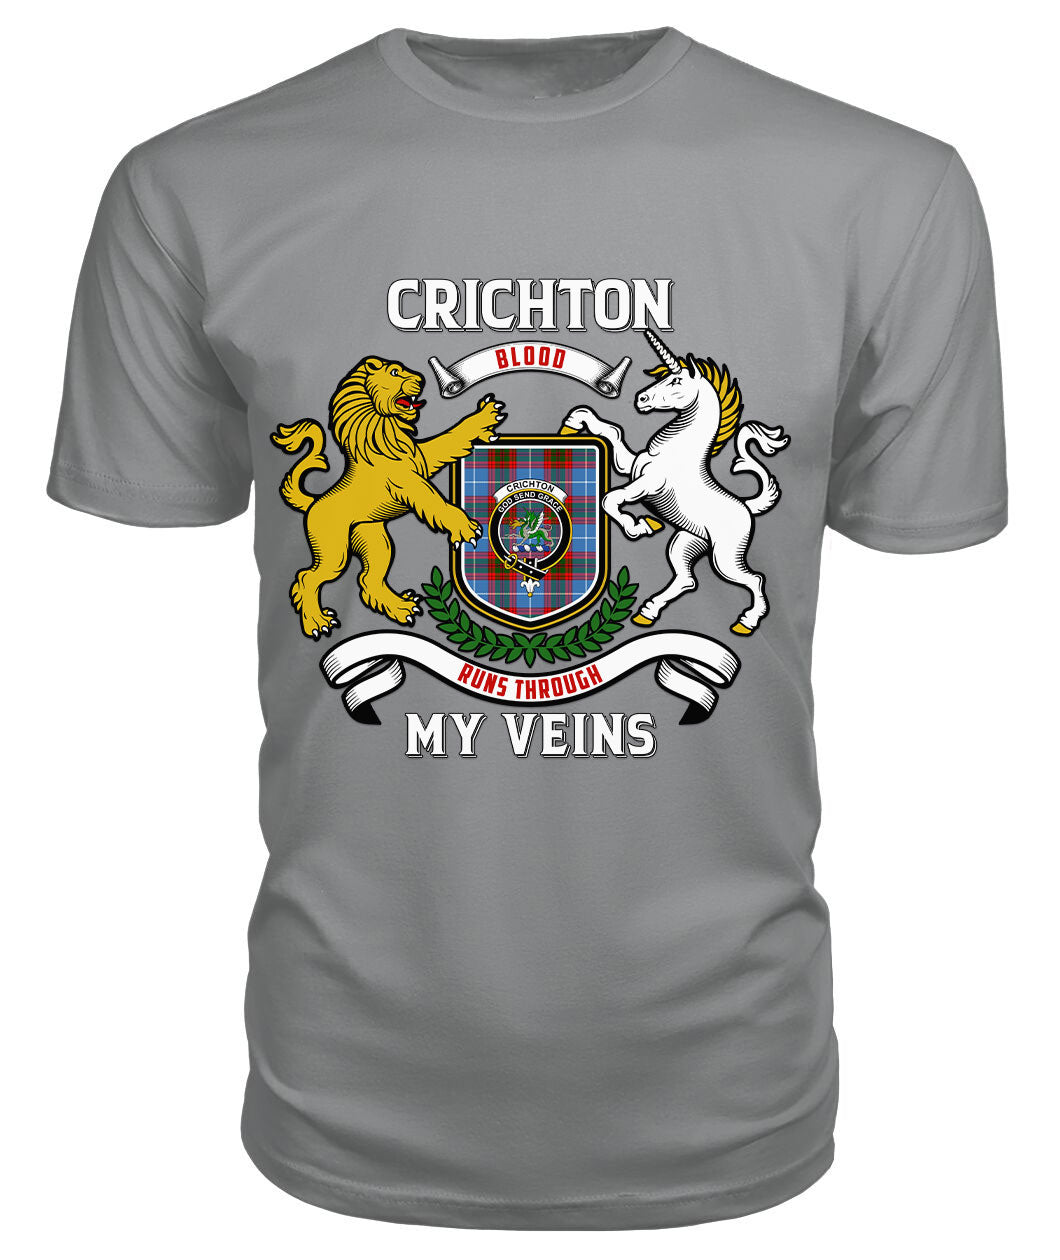 Crichton Tartan Crest 2D T-shirt - Blood Runs Through My Veins Style